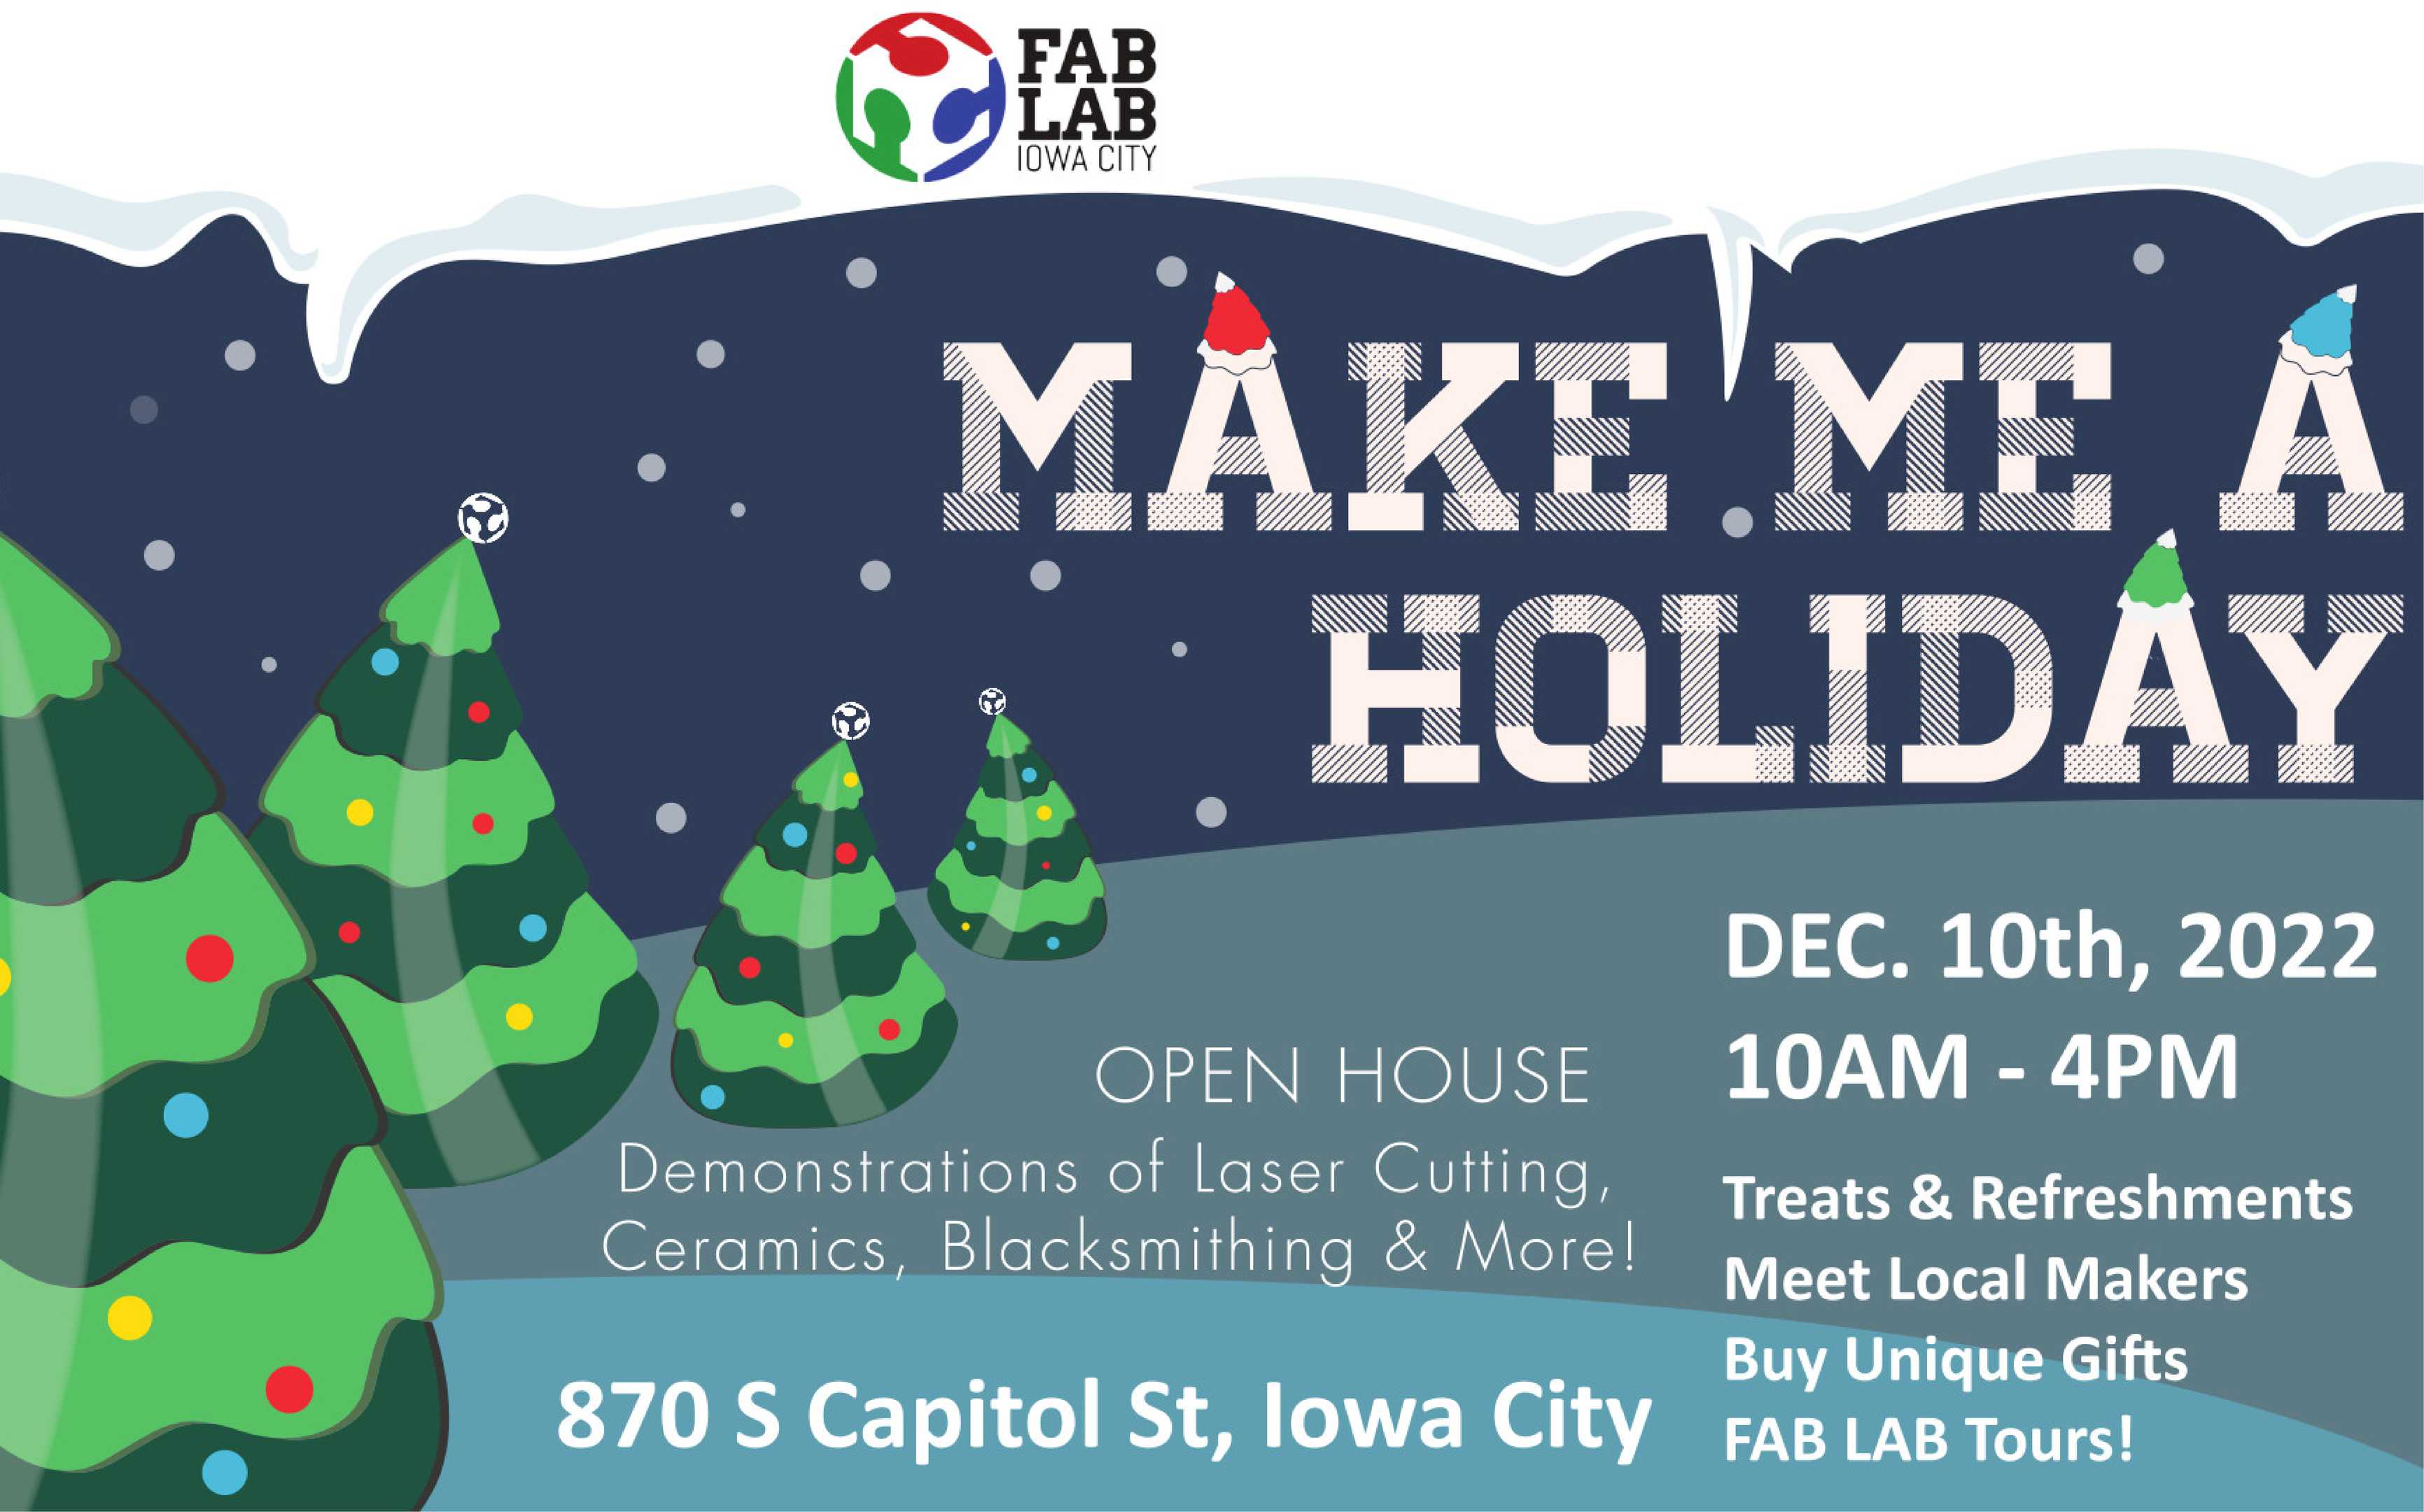 Iowa City FabLab Open House – Dec. 10, 10am-4pm 860 S Capitol St.